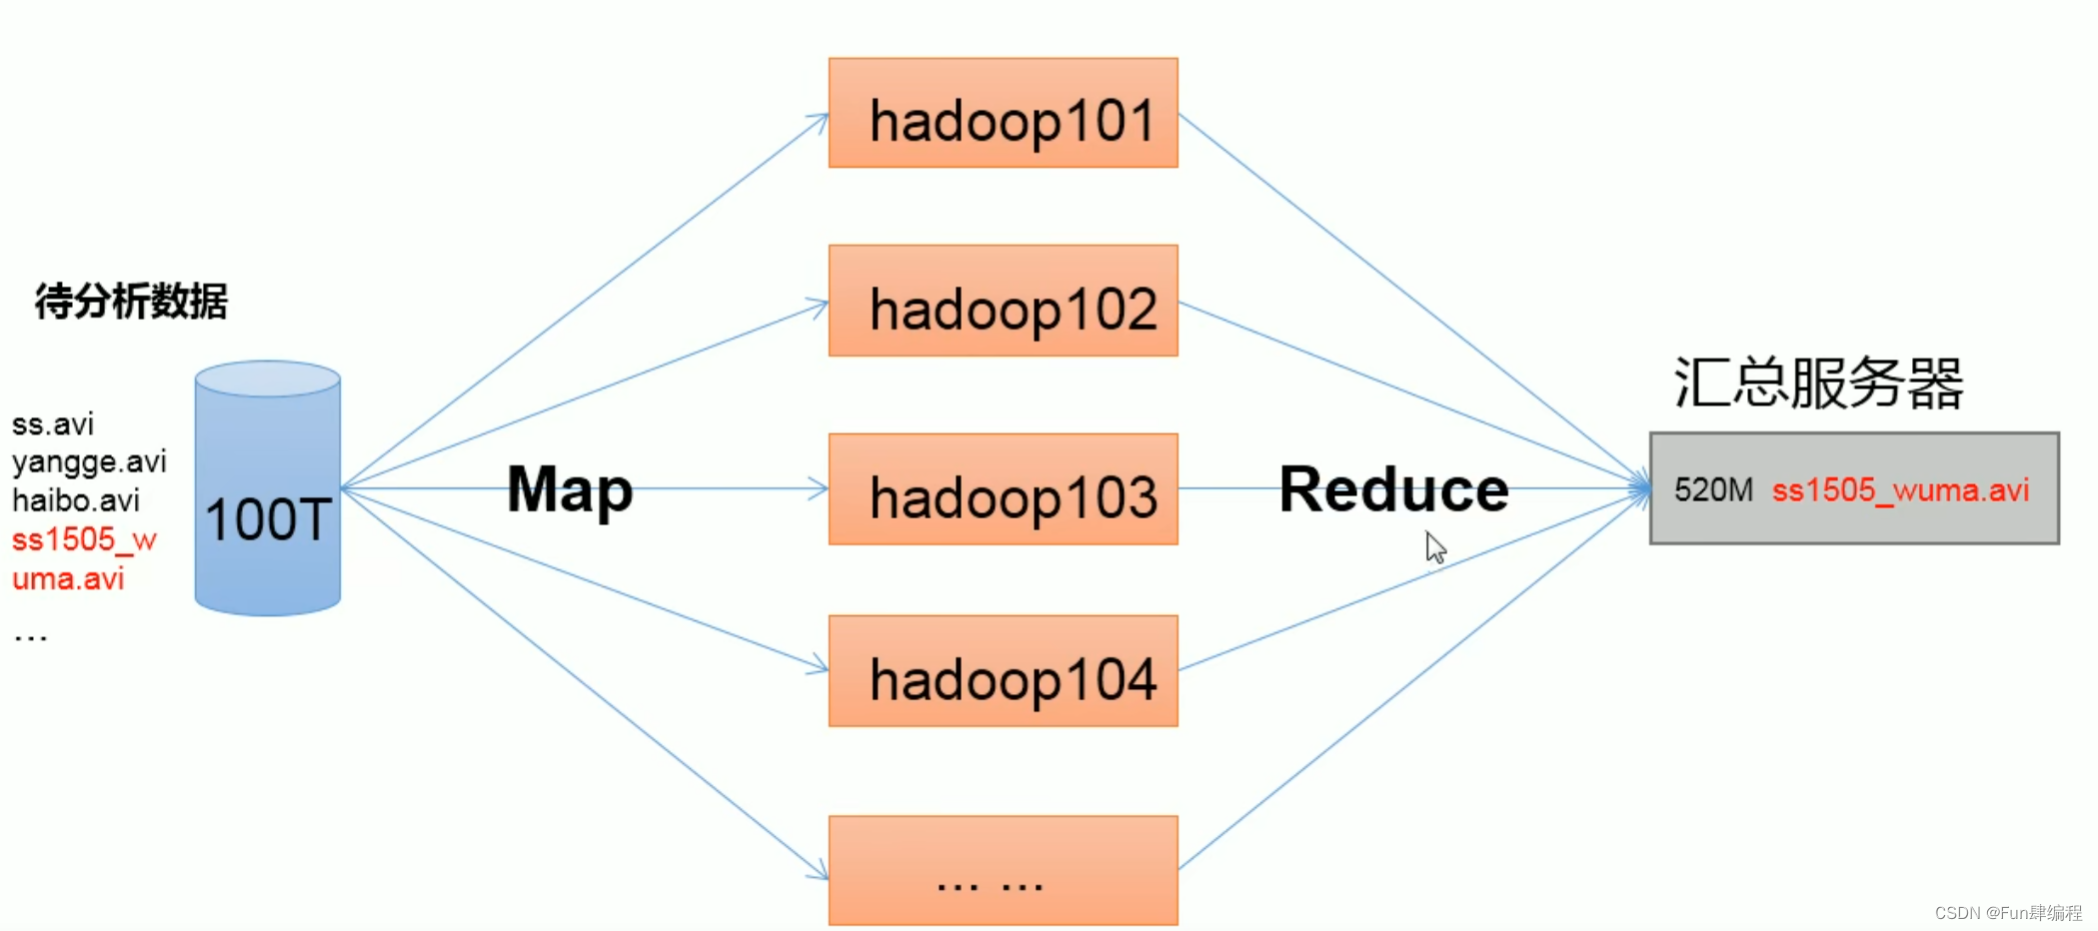 【大数据-Hadoop】从入门到源码编译-概念篇